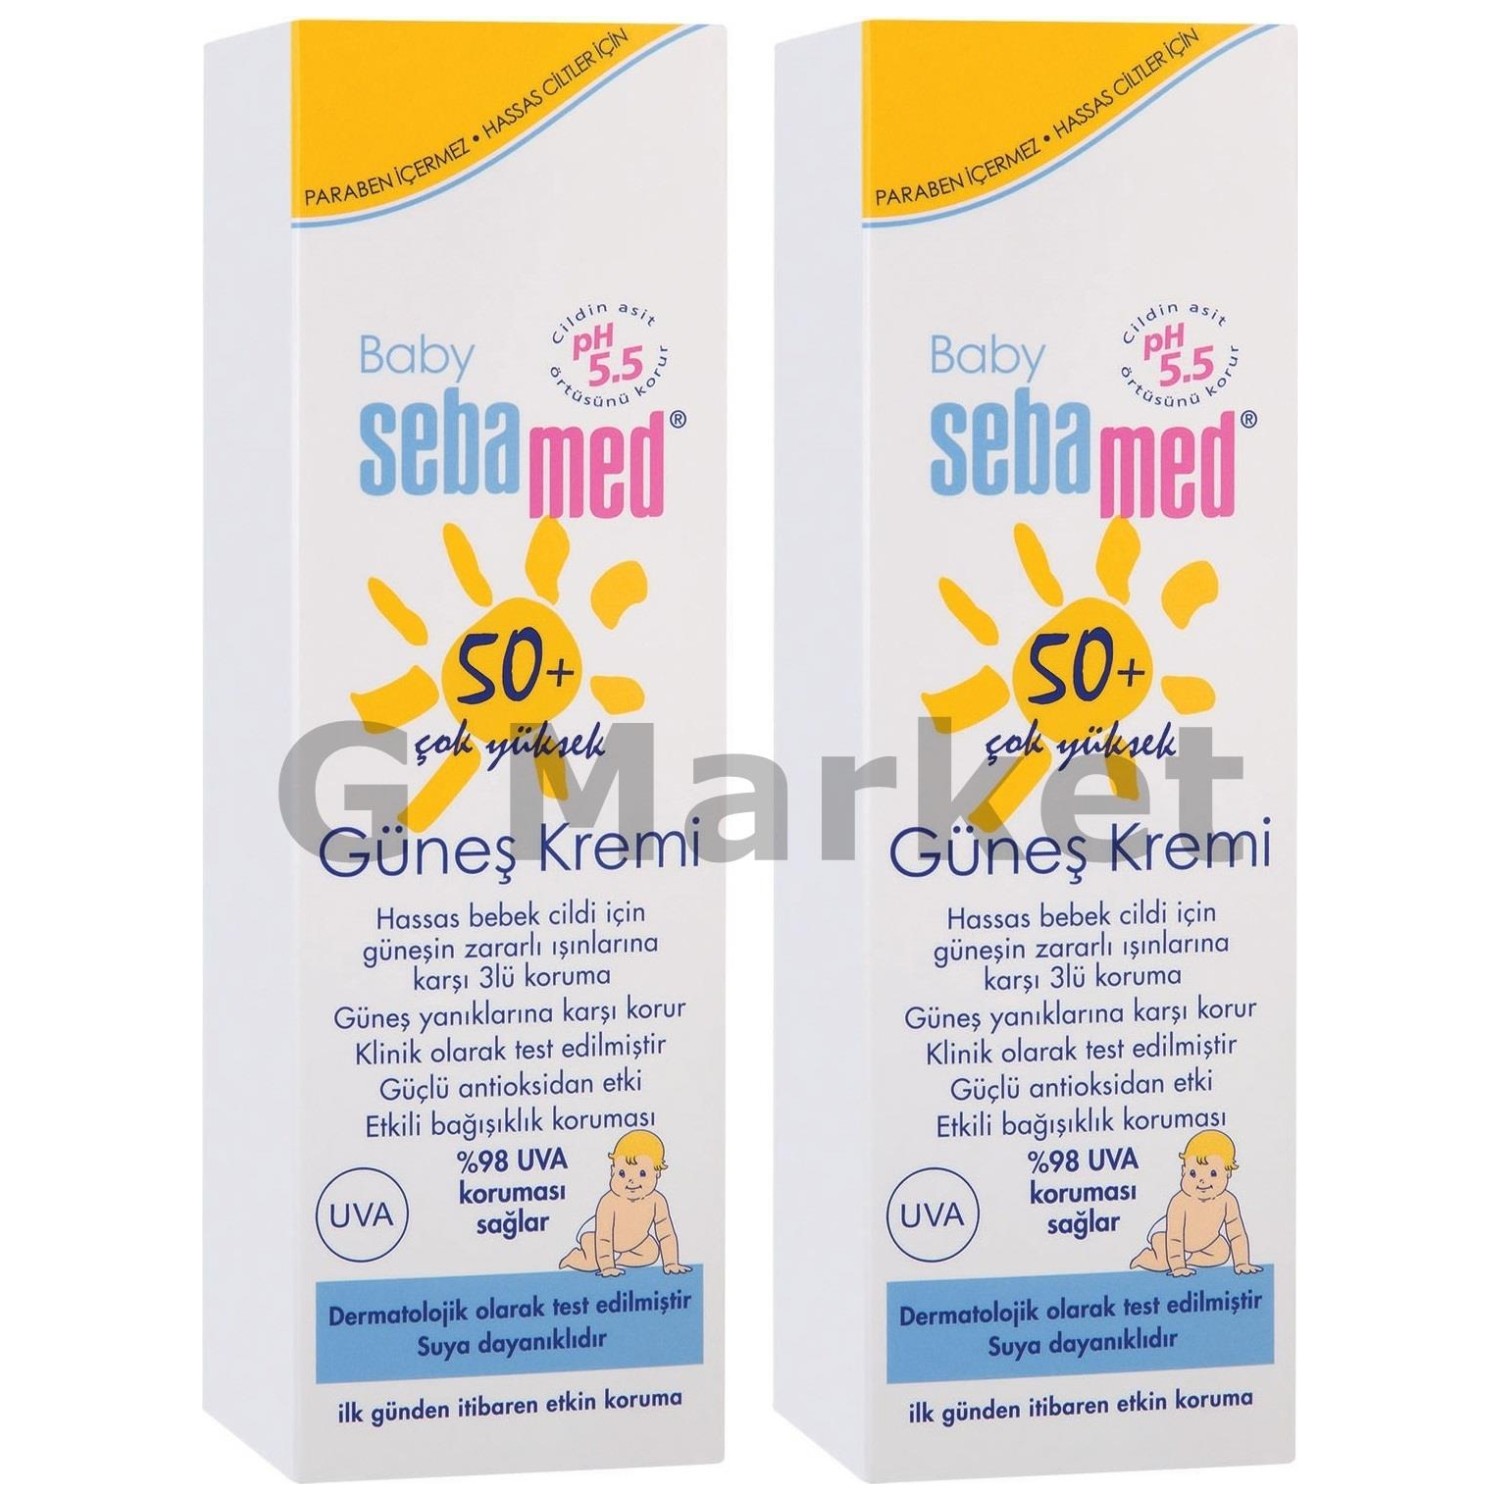 Солнцезащитный крем Sebamed Baby SPF 50+, 2 флакона по 75 мл фотографии